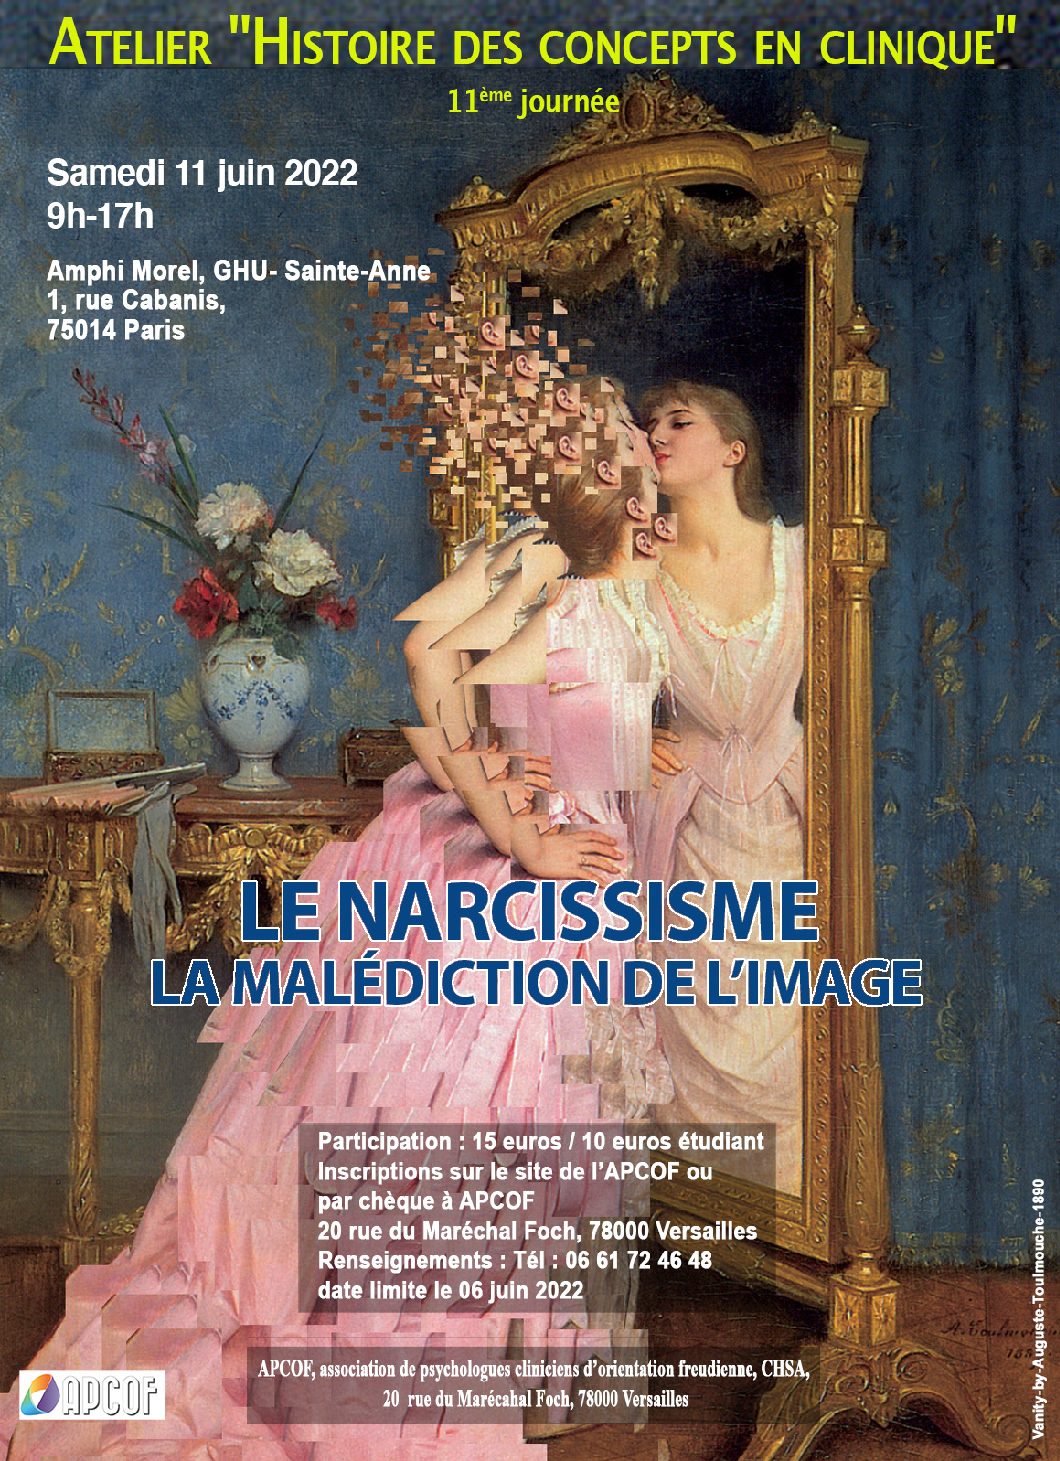 11e Journée de l'atelier Histoire des concepts en clinique, "Le narcissisme ou la malédiction de l'image", samedi 11 juin 2022.